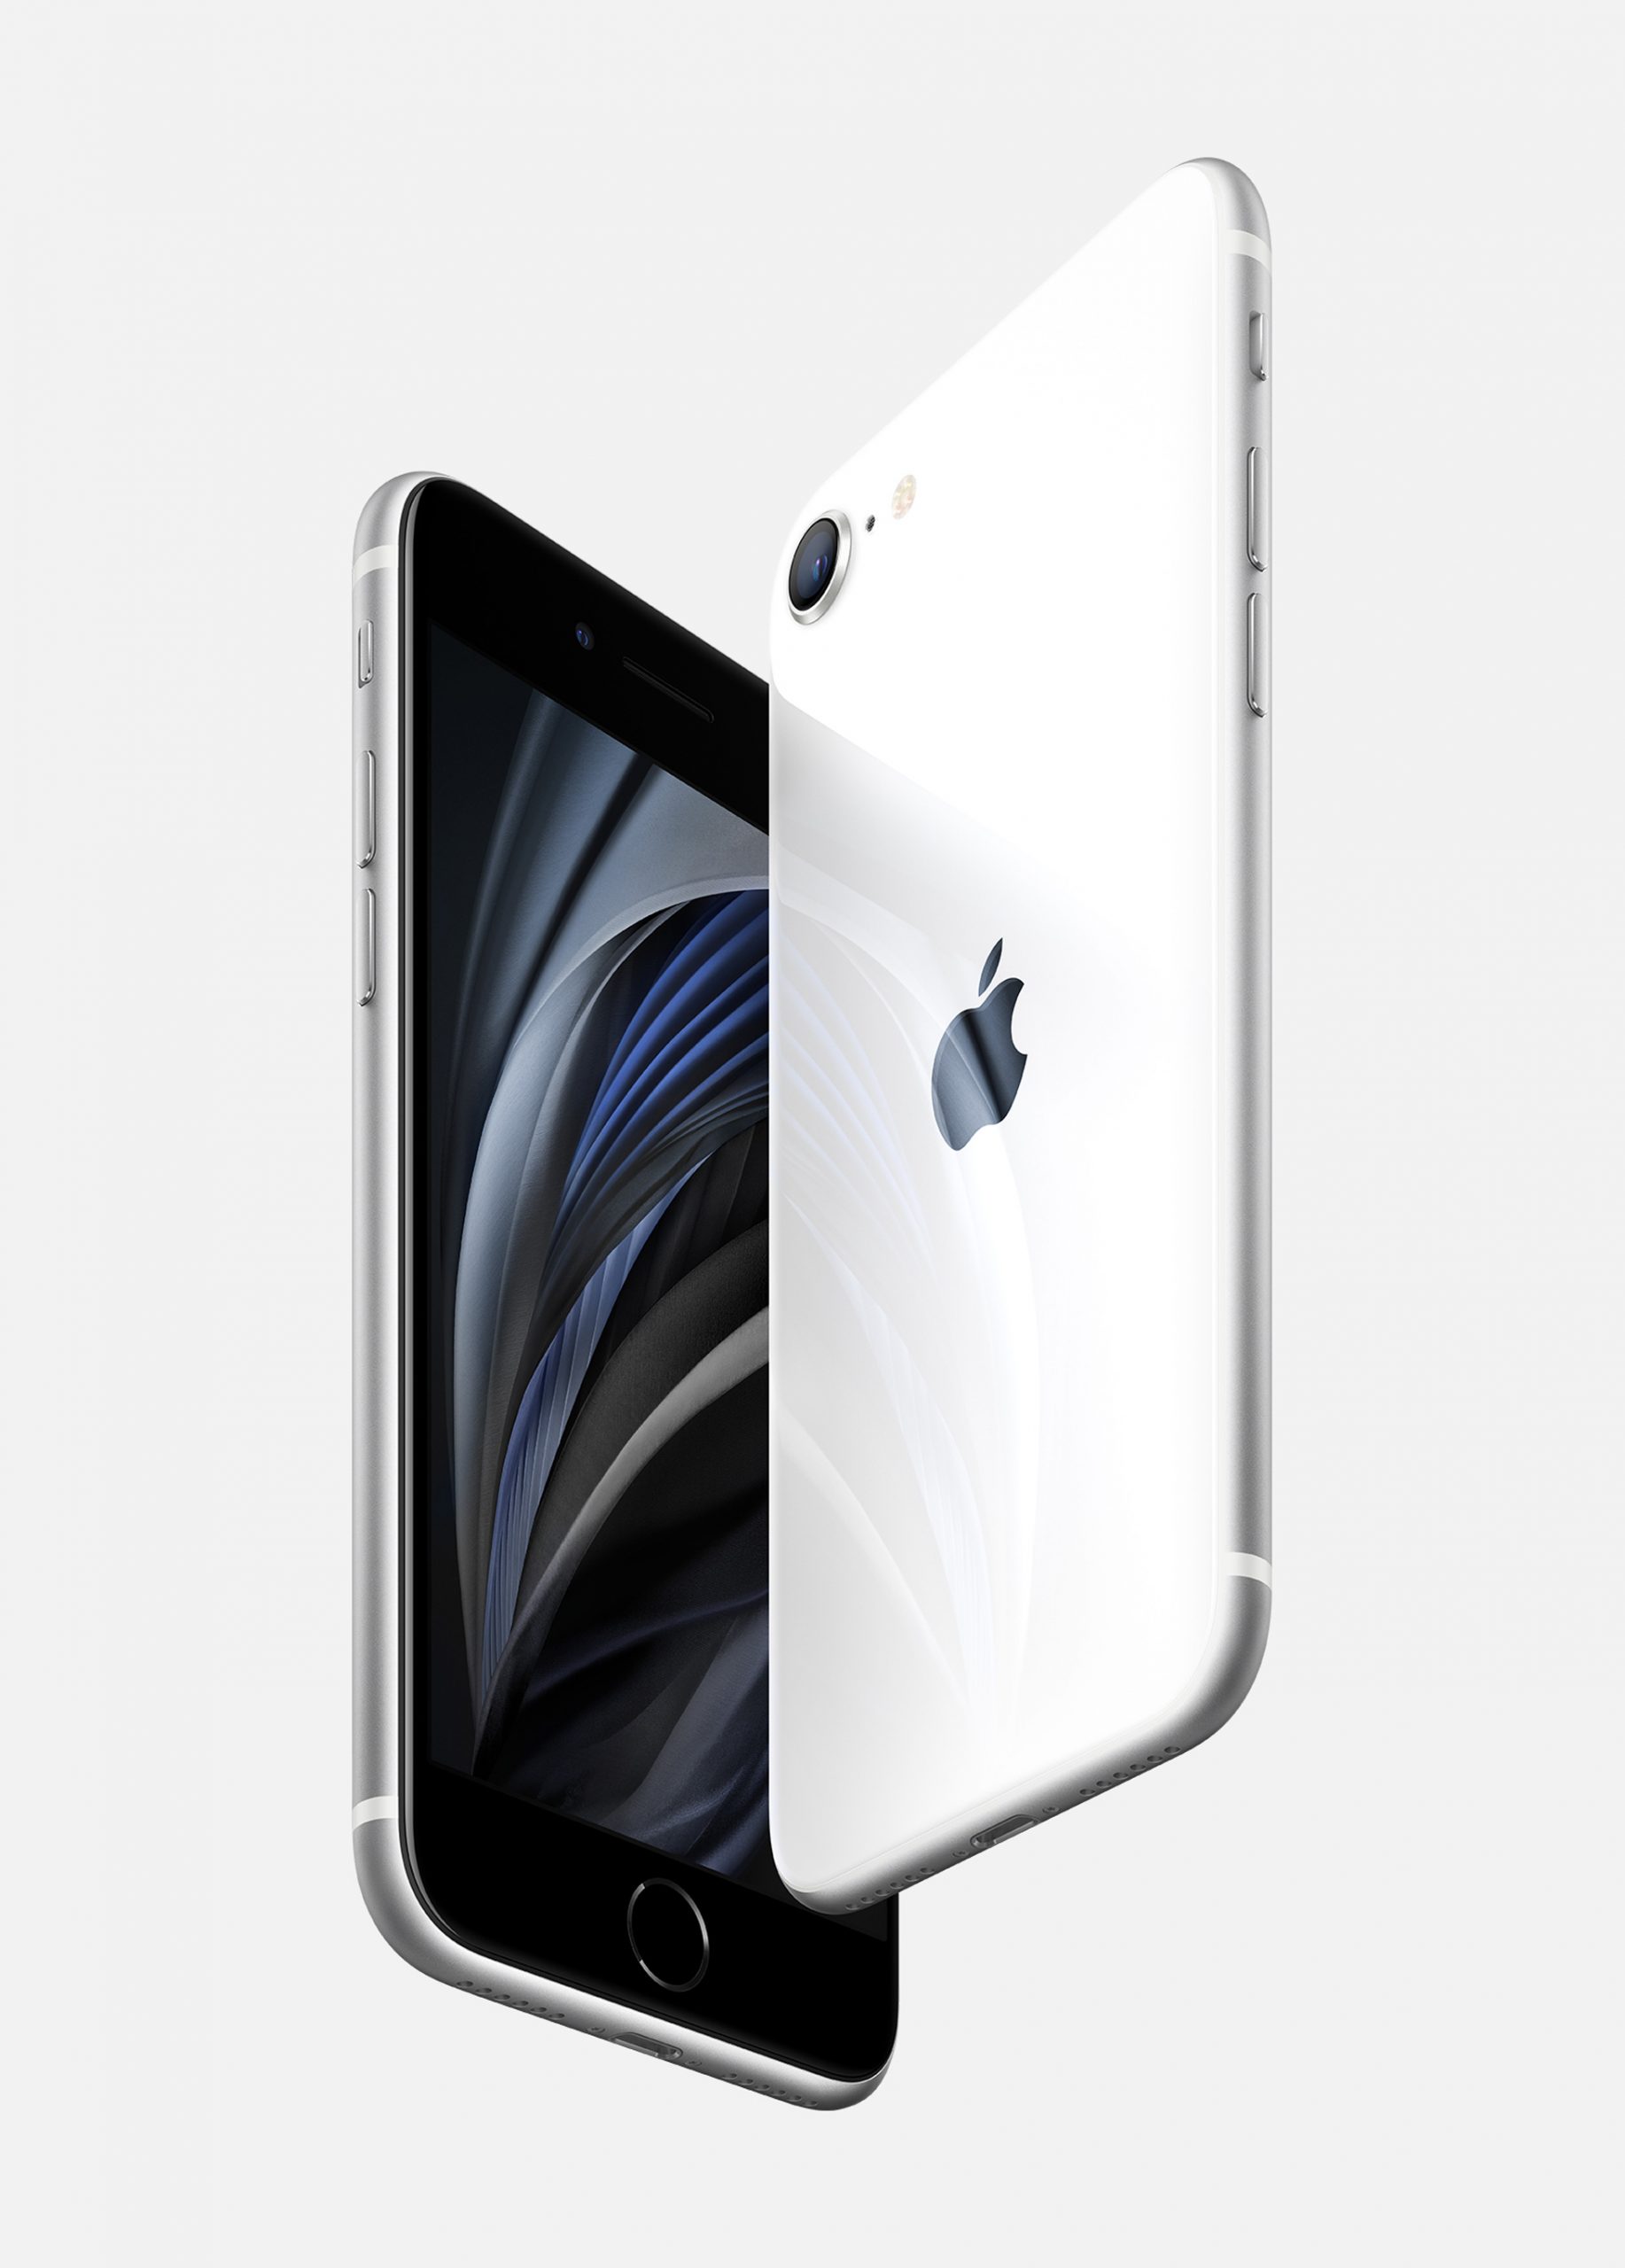 iPhone SE 2020 sẽ không có chip định vị U1 như iPhone 11